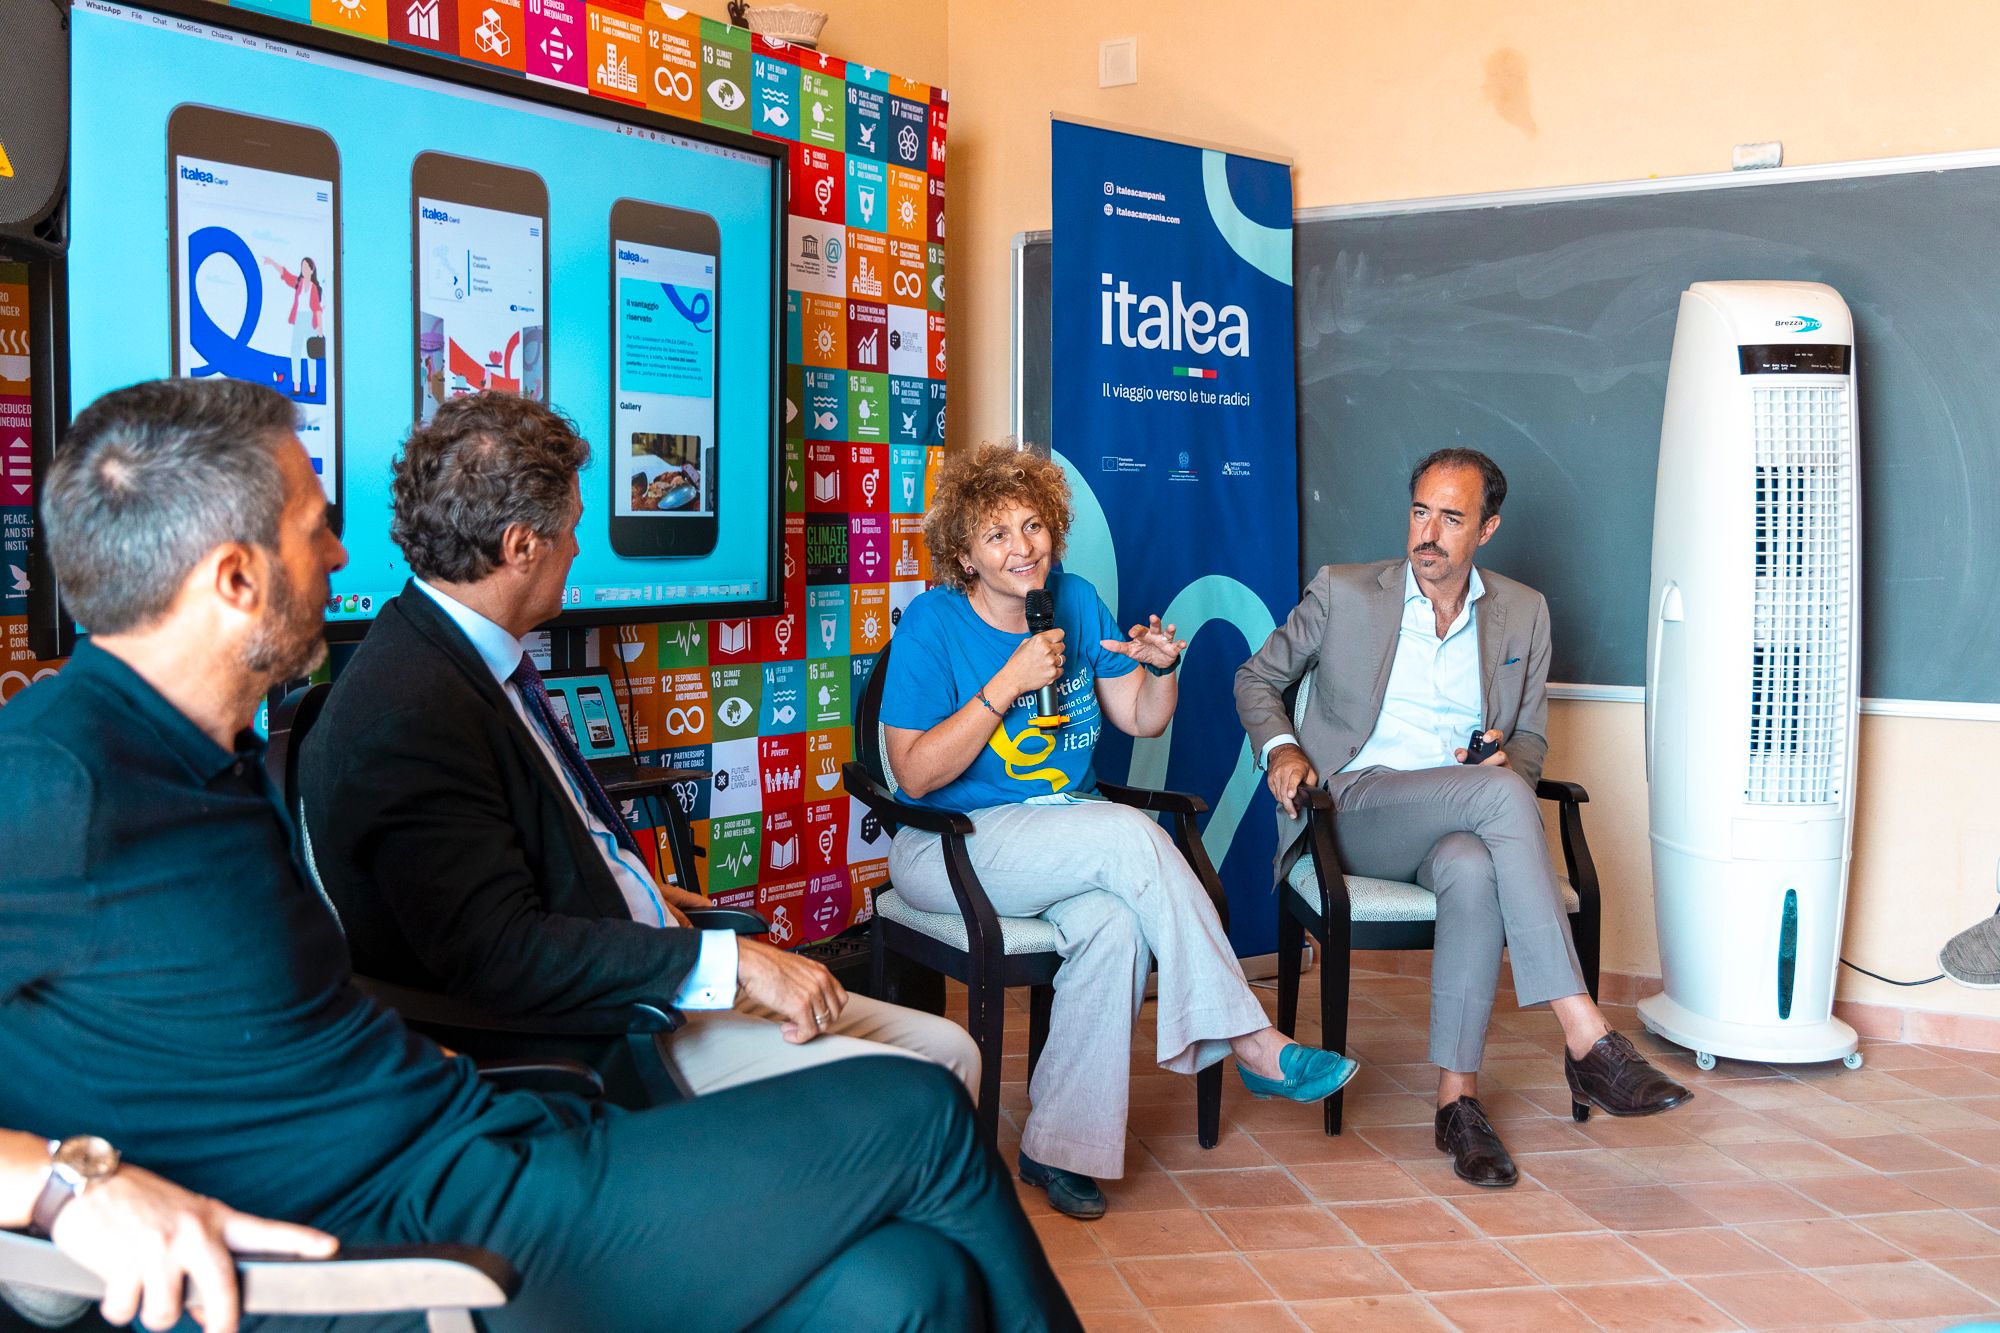 Italea Campania, turismo delle radici: a Pollica la presentazione delle iniziative